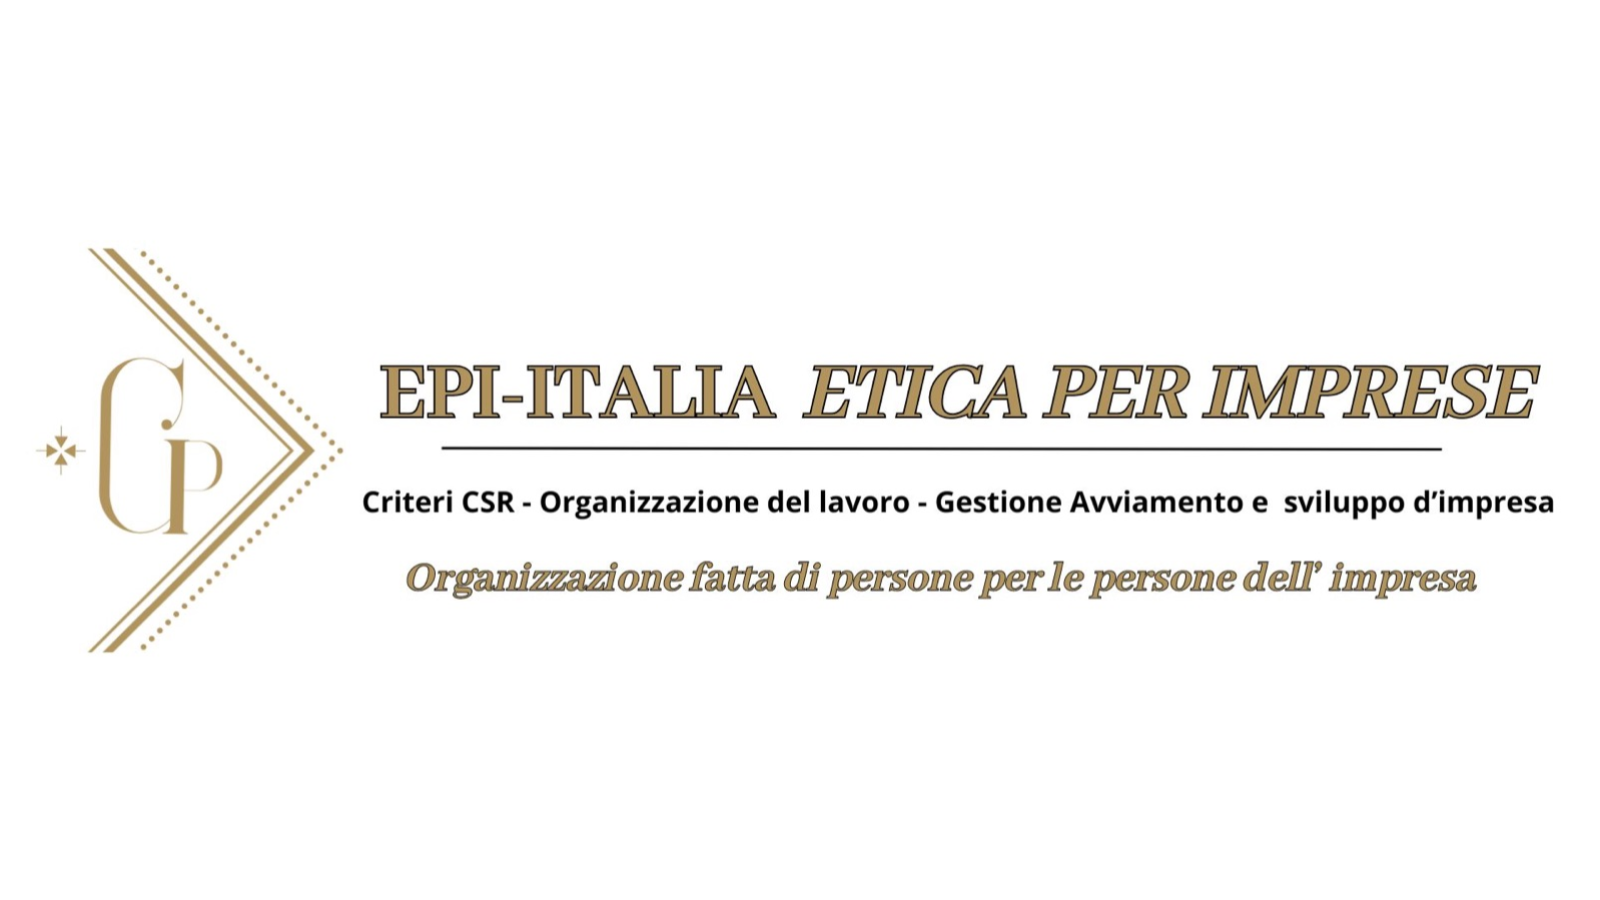 EPI Italia - Etica per Imprese